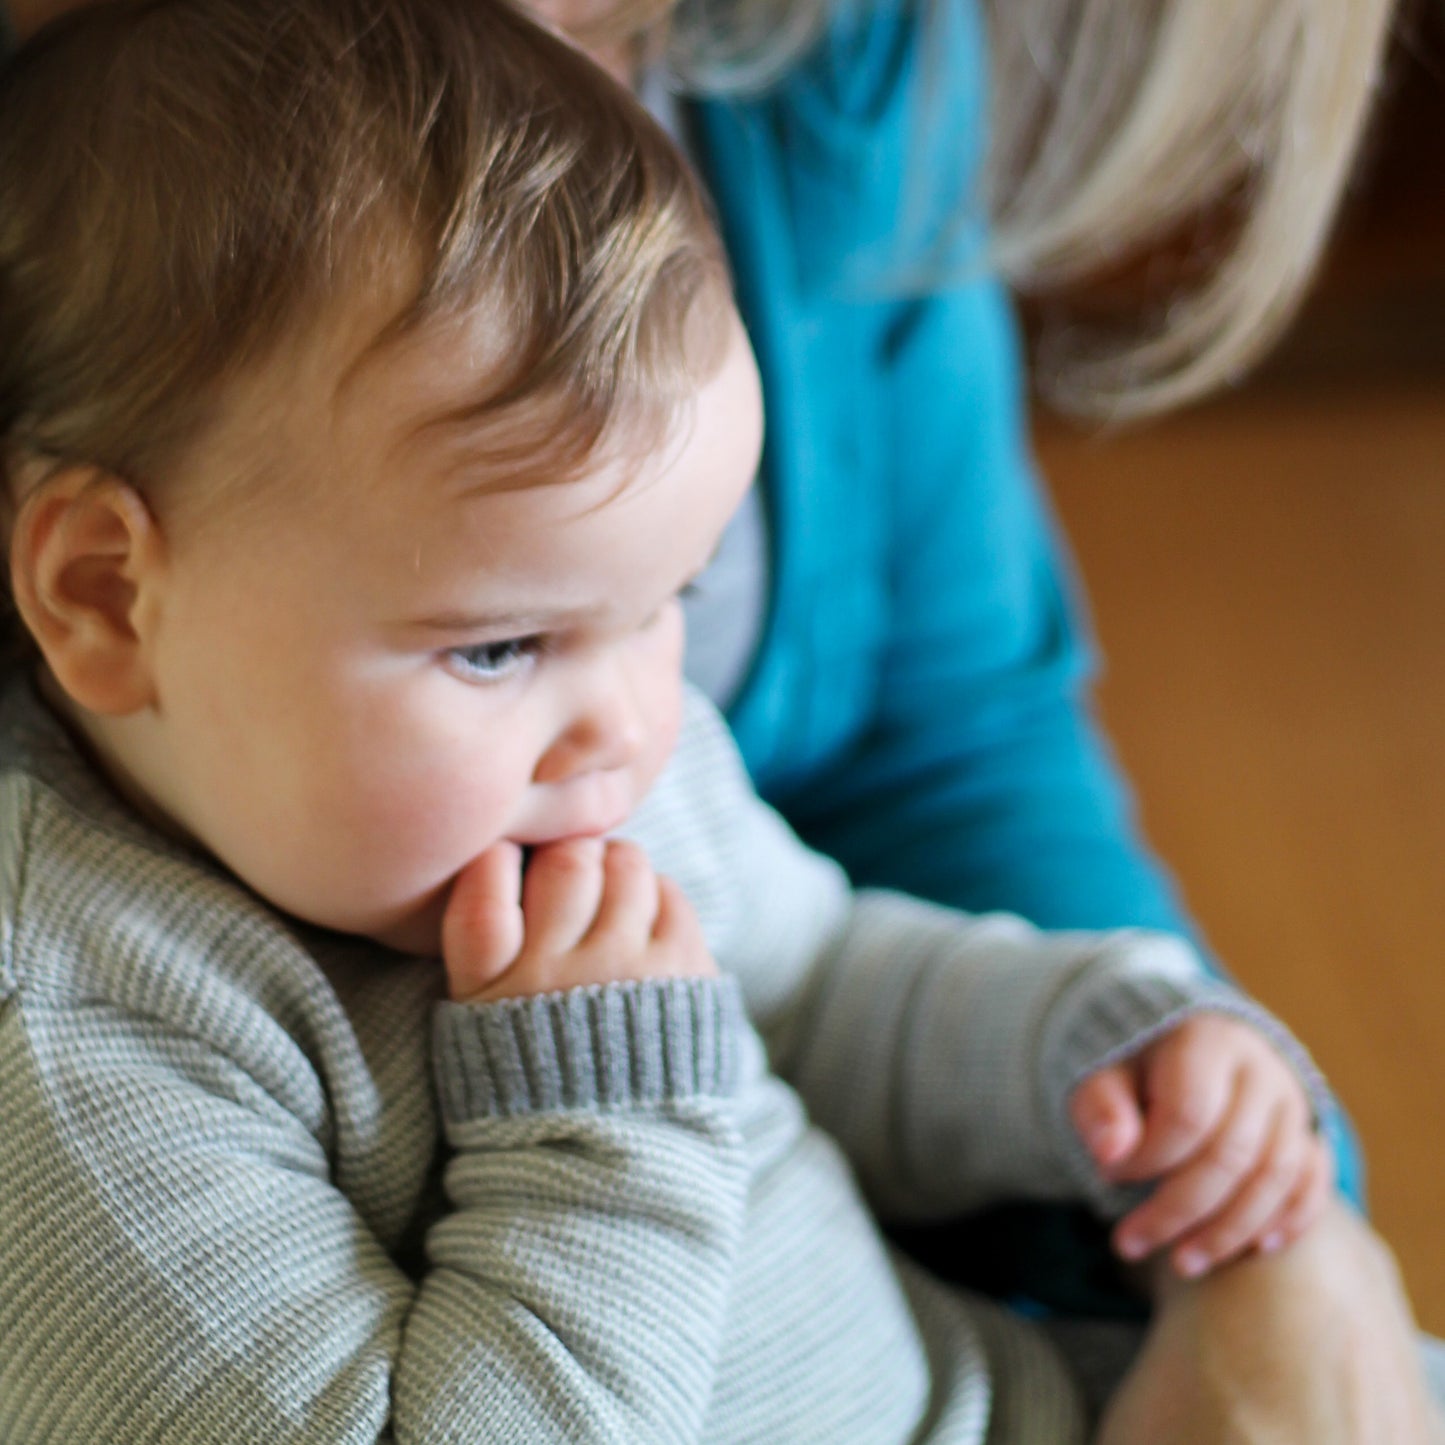 Disana Baby/Toddler Melange Chandail avec bouton, Laine tricotée - 15 % de rabais